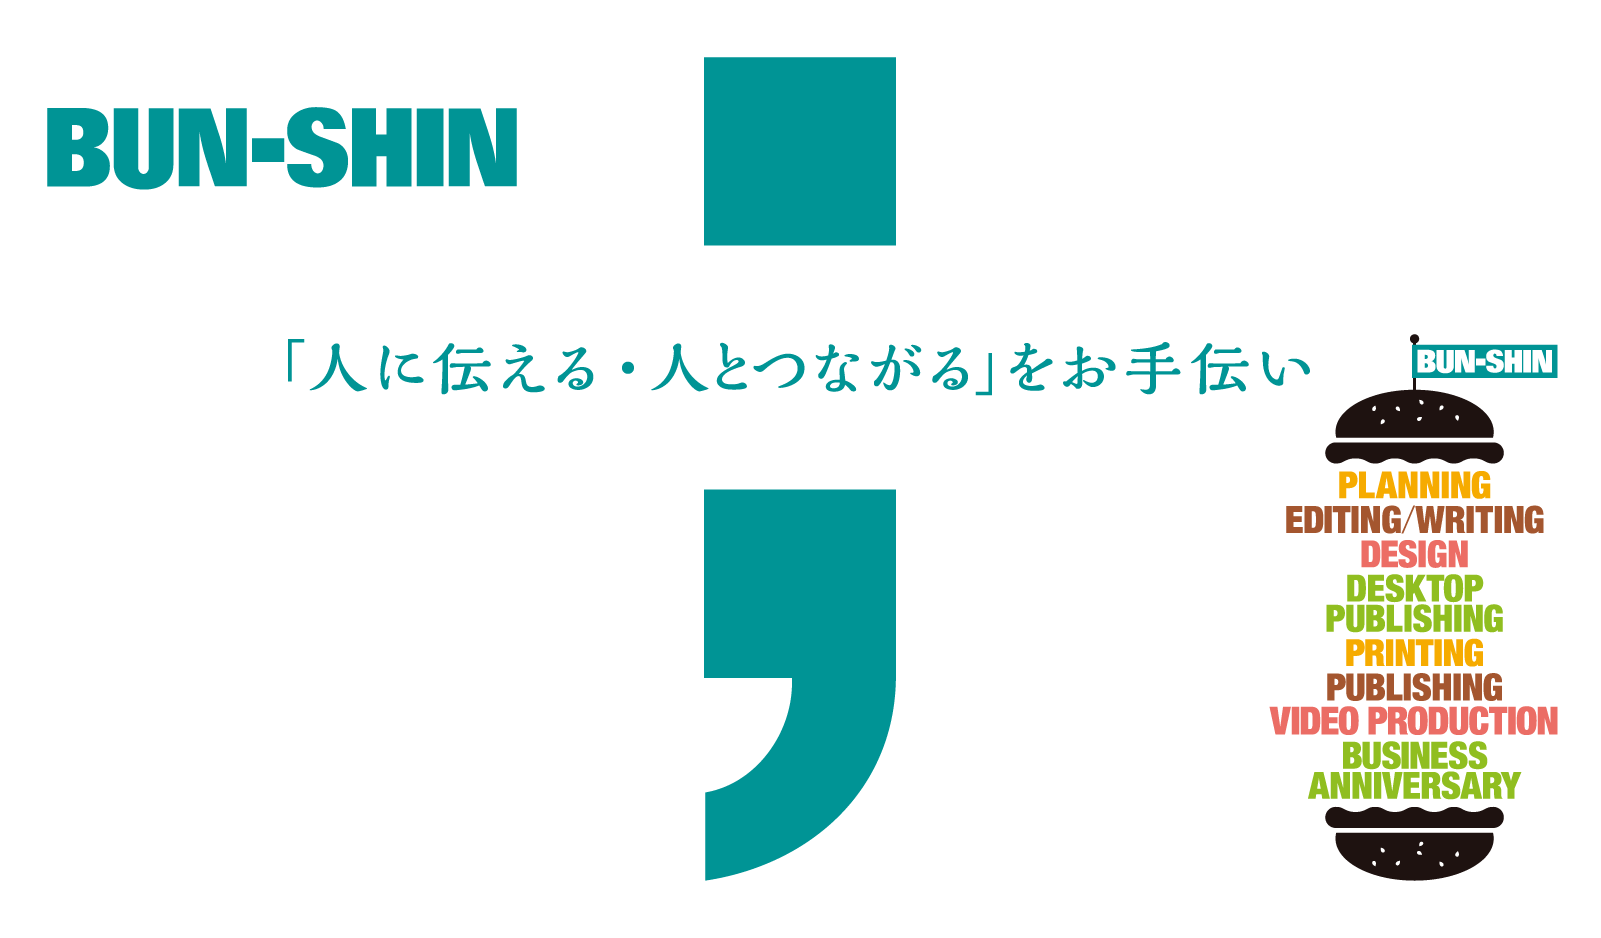 株式会社文伸/ぶんしん出版